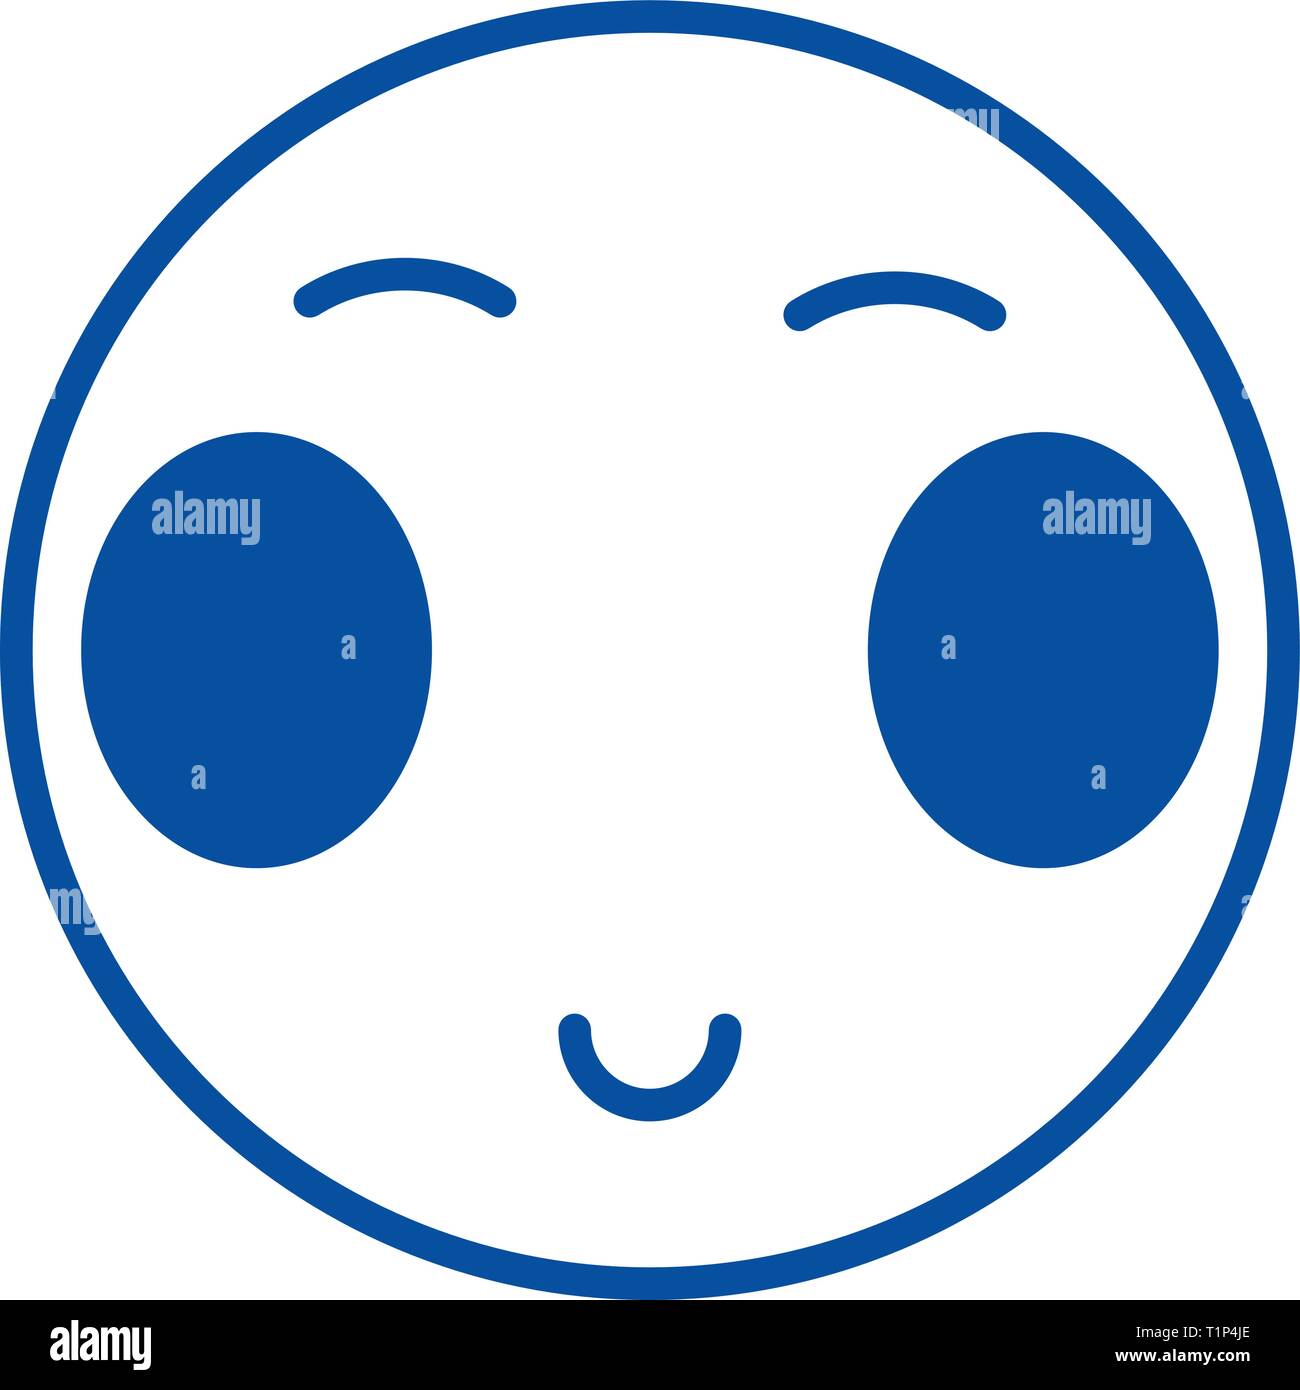 Japanische offenen Augen emoji Symbol Leitung Konzept. Japanische offenen Augen emoji Flachbild vektor Symbol, Zeichen, umriss Abbildung. Stock Vektor